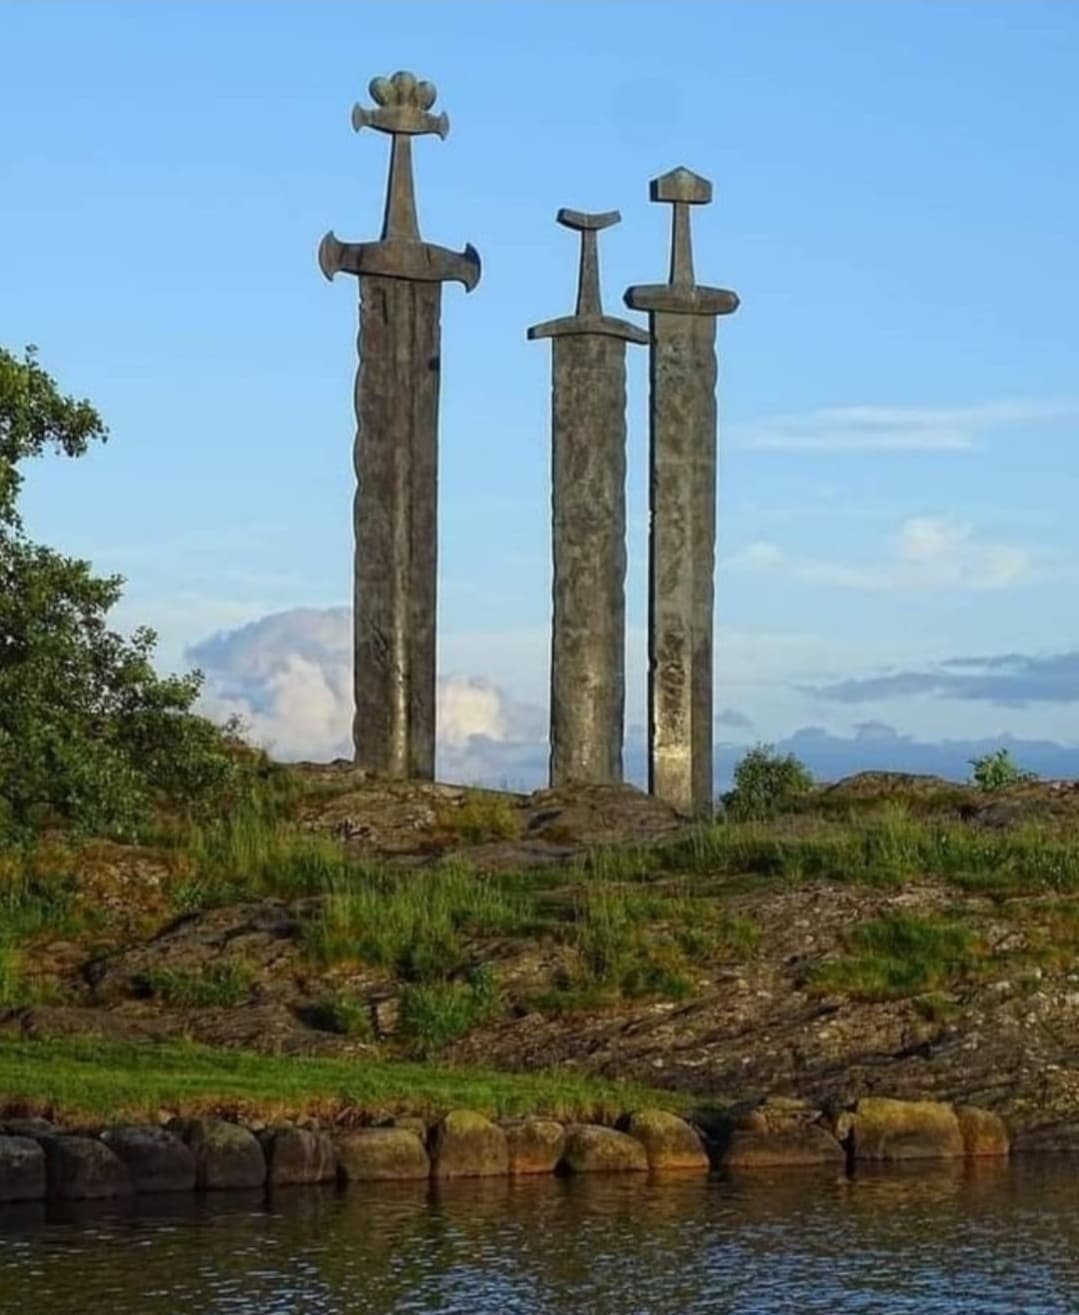 The Swords of Stavanger, Norway